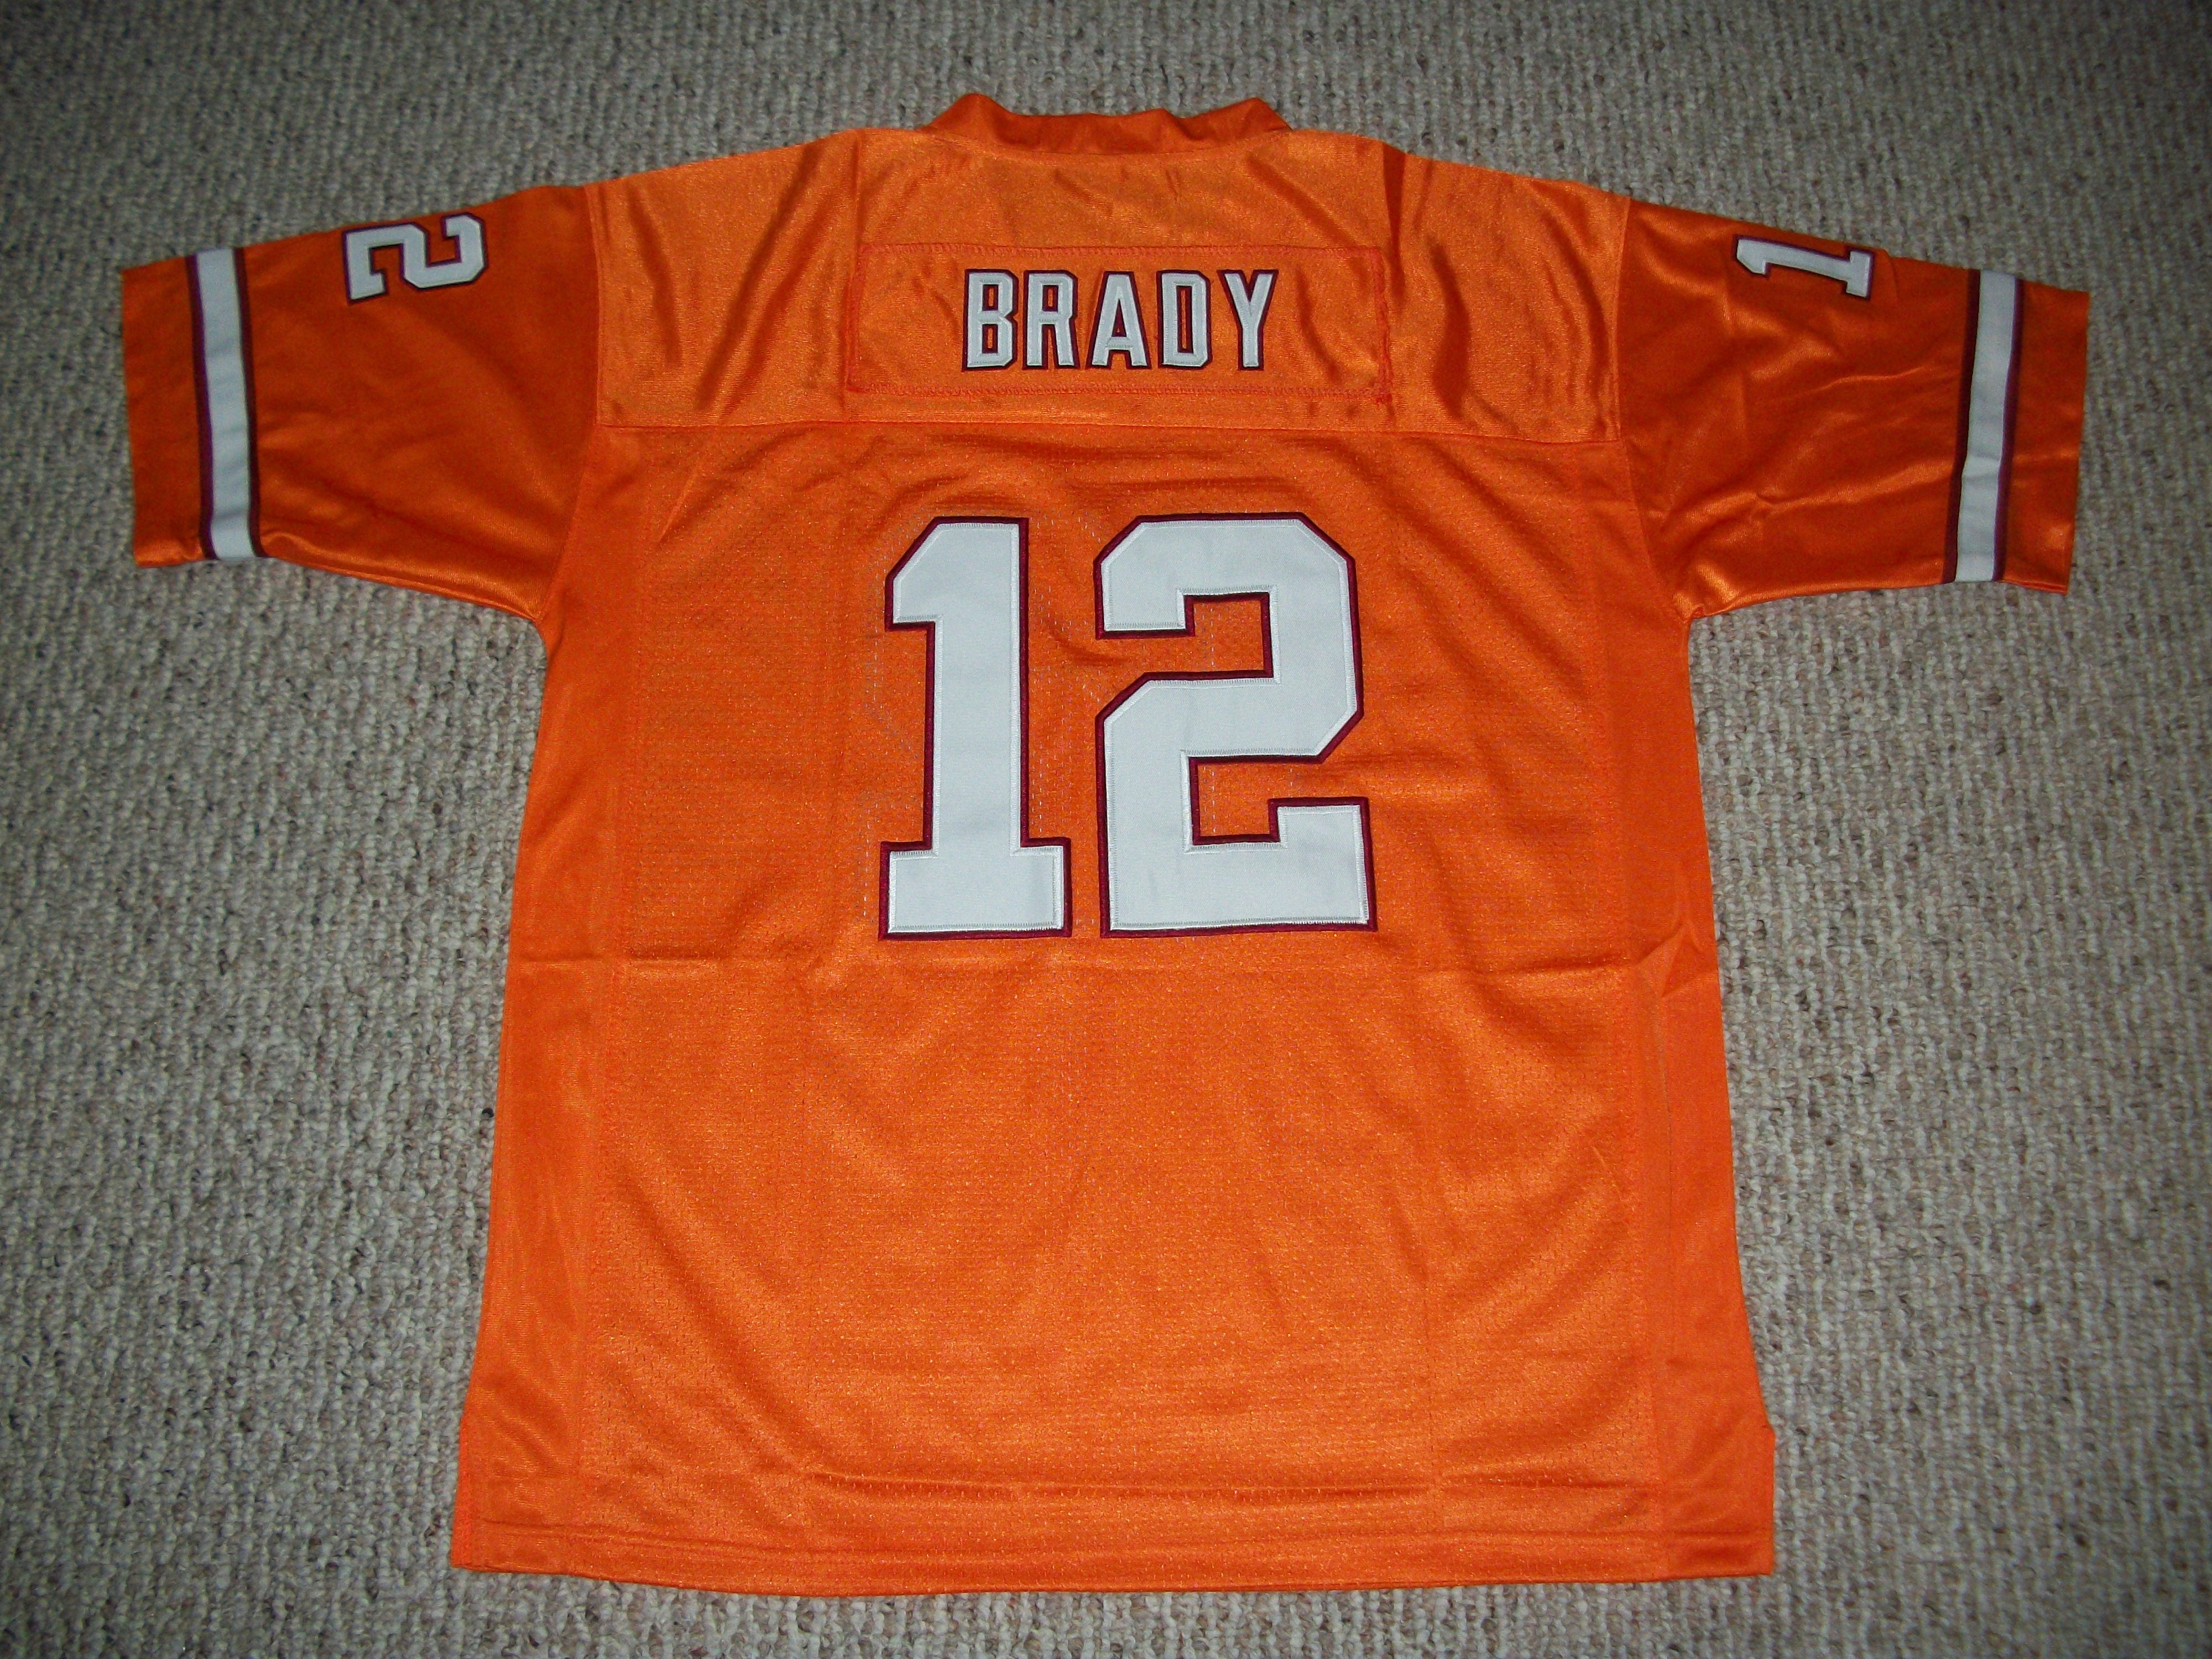 brady orange bucs jersey